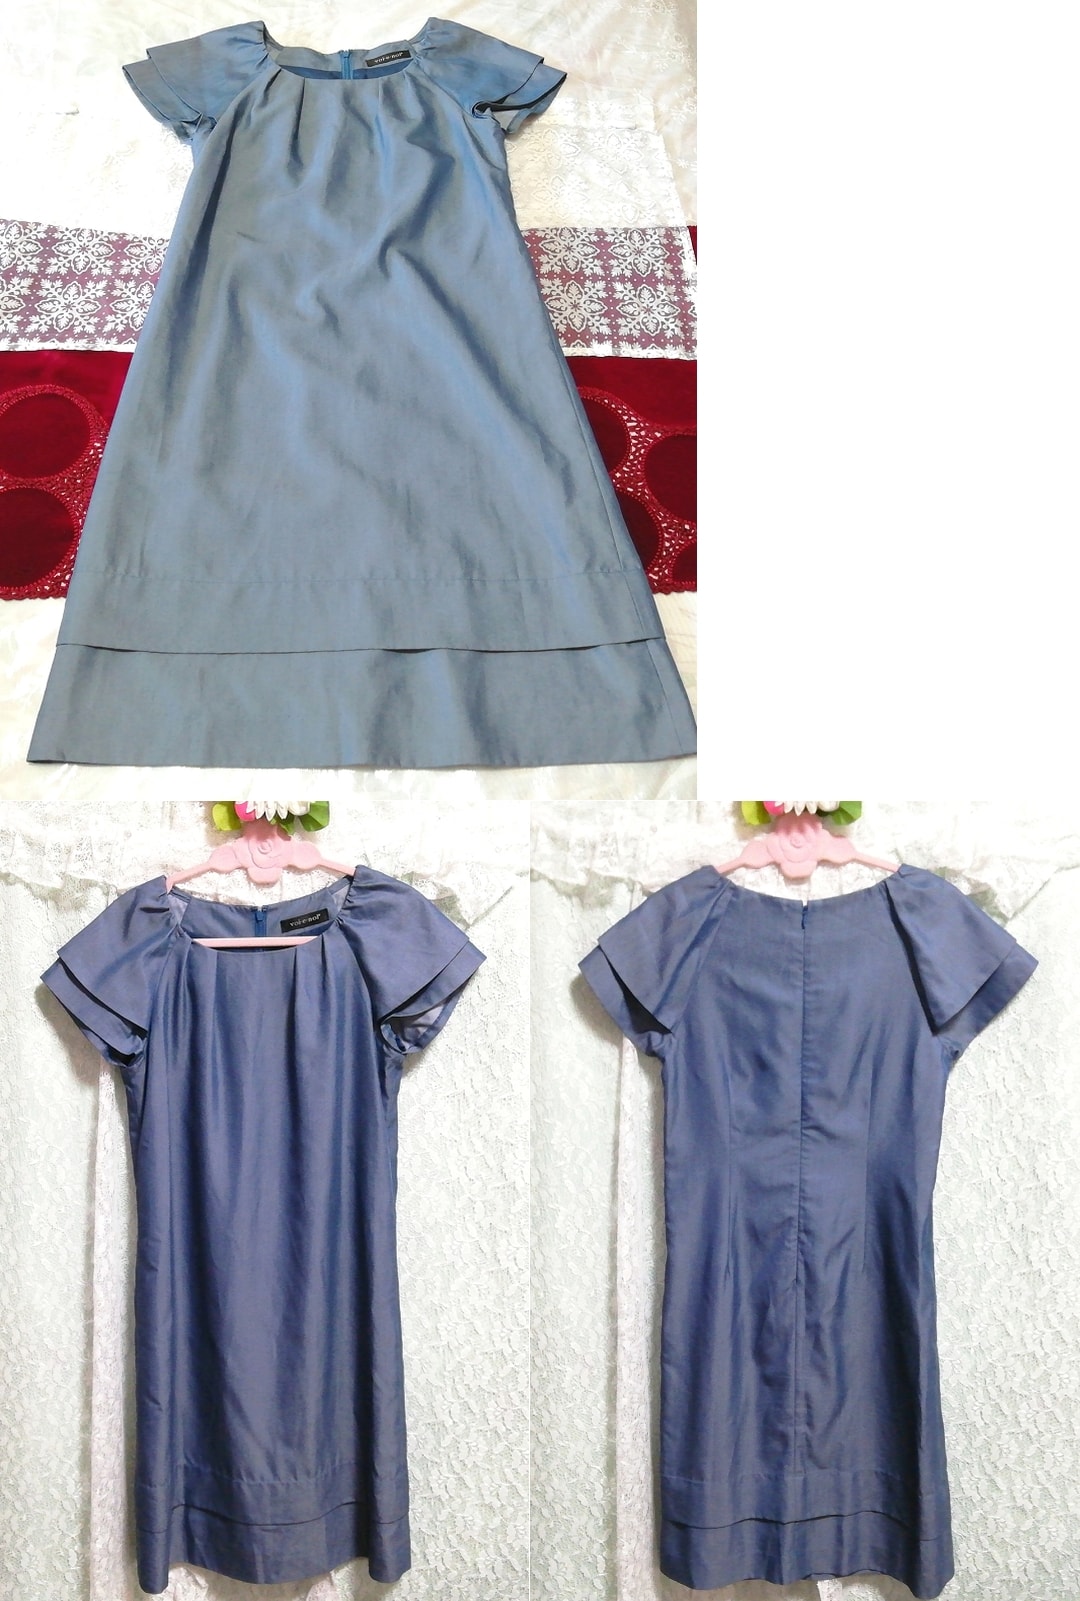 فستان نوم من قماش الدنيم بأكمام قصيرة وطويلة من الرداء, سترة, كم قصير, حجم م